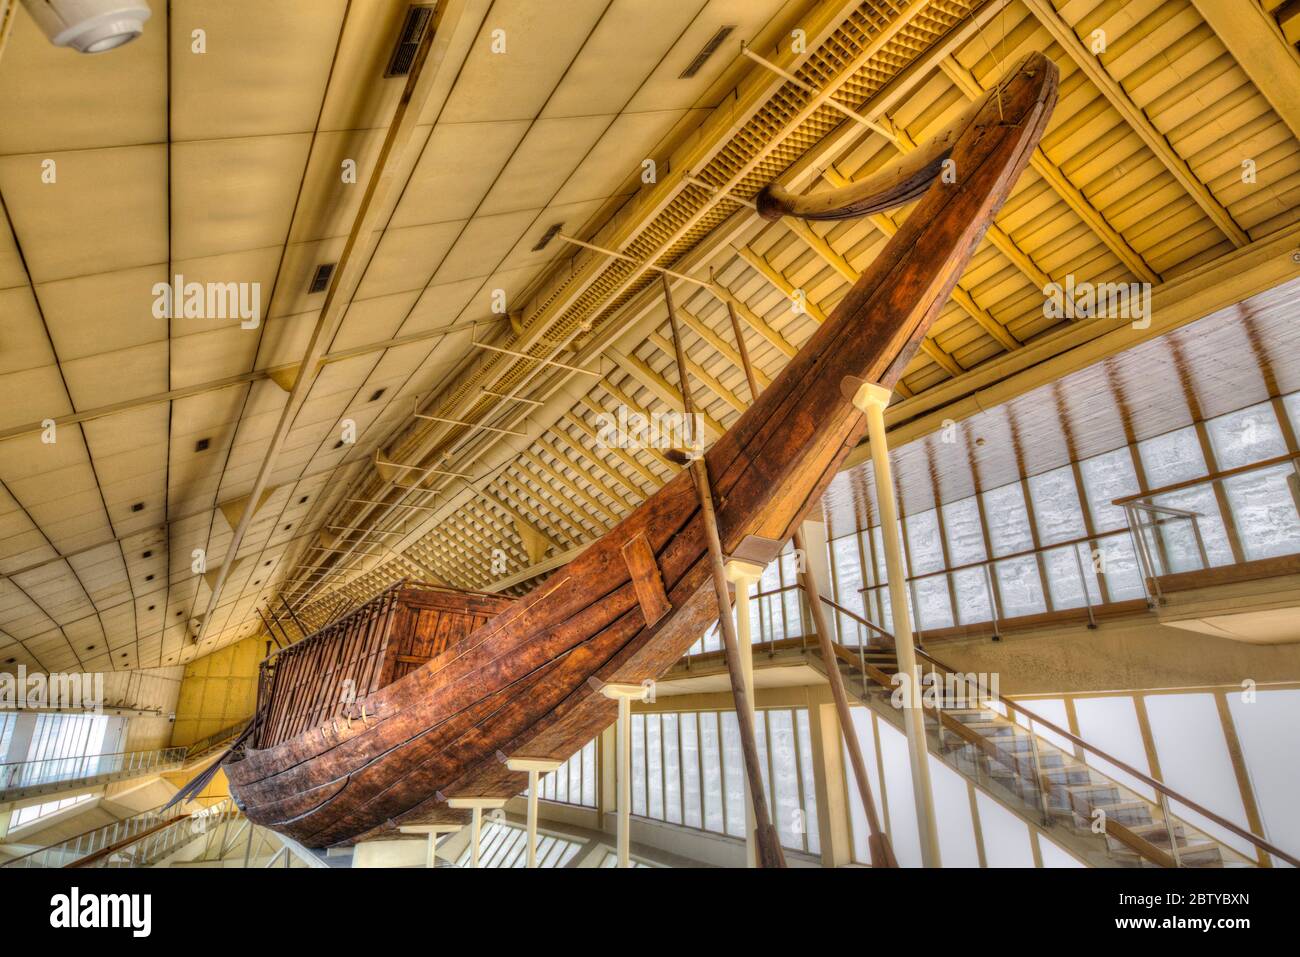 Le navire Khufu, le musée du bateau solaire Gizeh, les grandes pyramides de Gizeh, site du patrimoine mondial de l'UNESCO, Gizeh, Égypte, Afrique du Nord, Afrique Banque D'Images